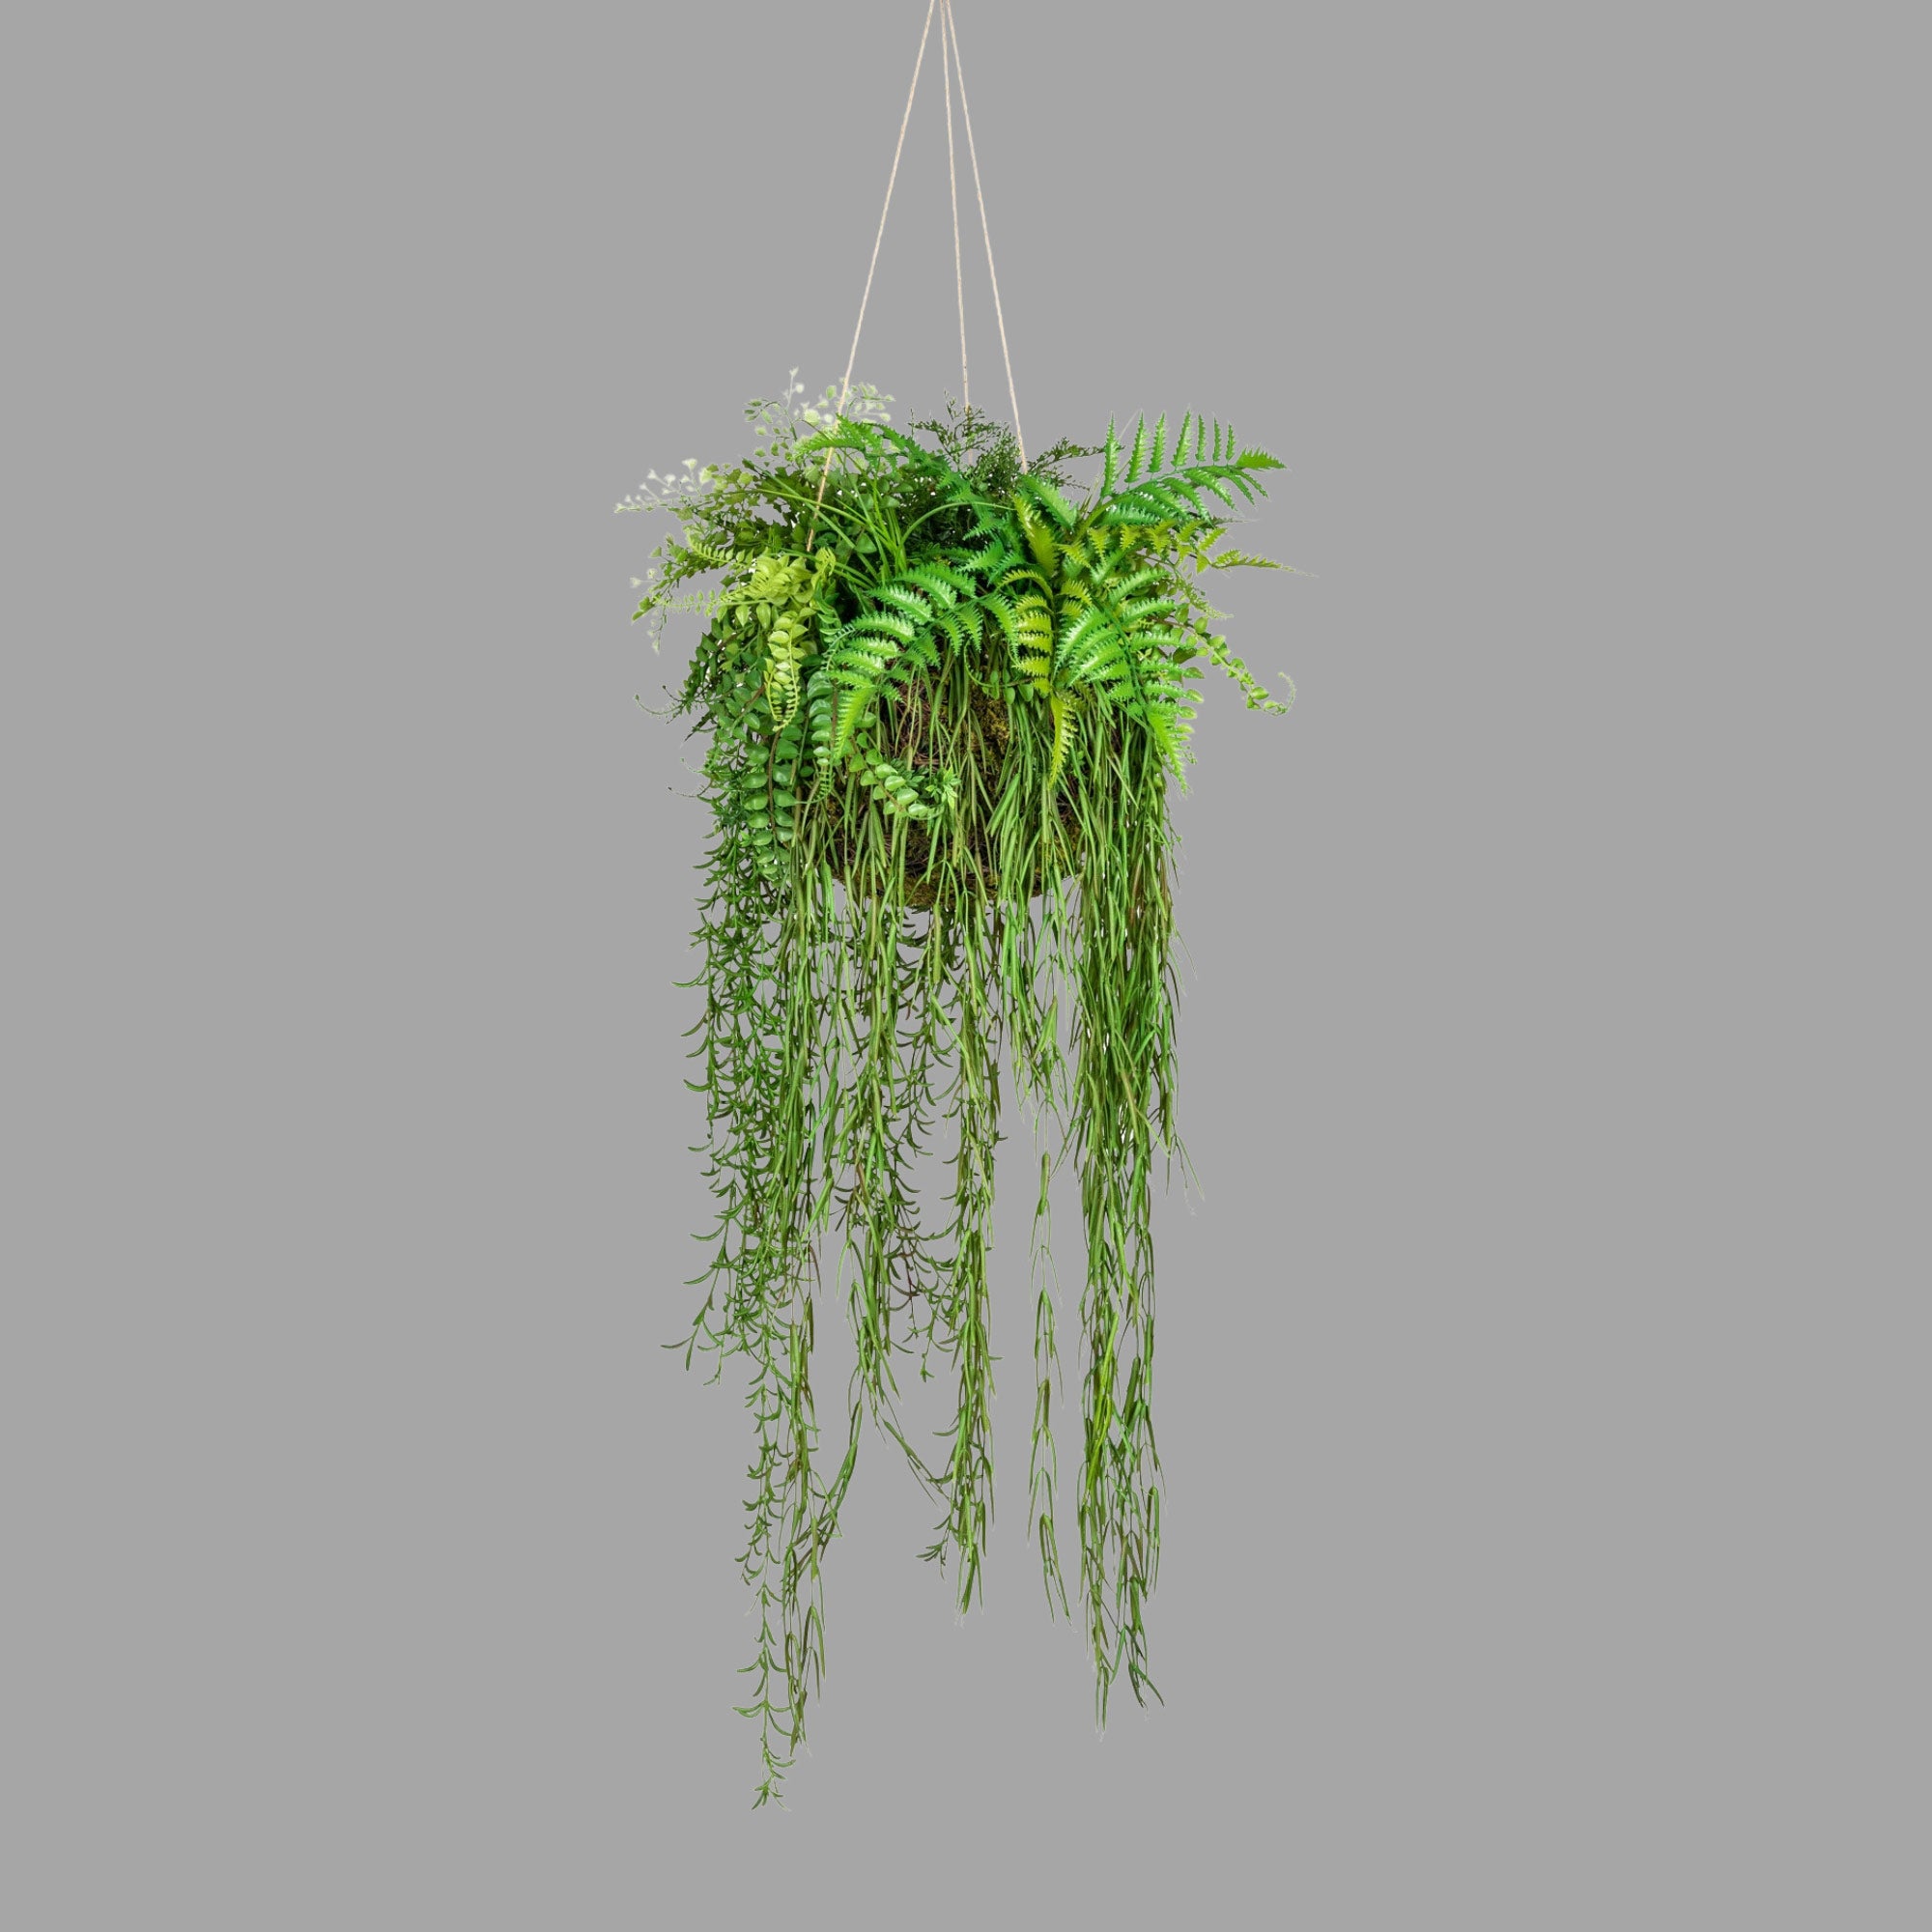 Függeszthető kialakítású, 40 cm átmérőjű mohalabdás páfrány mix műnövény kompozíció.